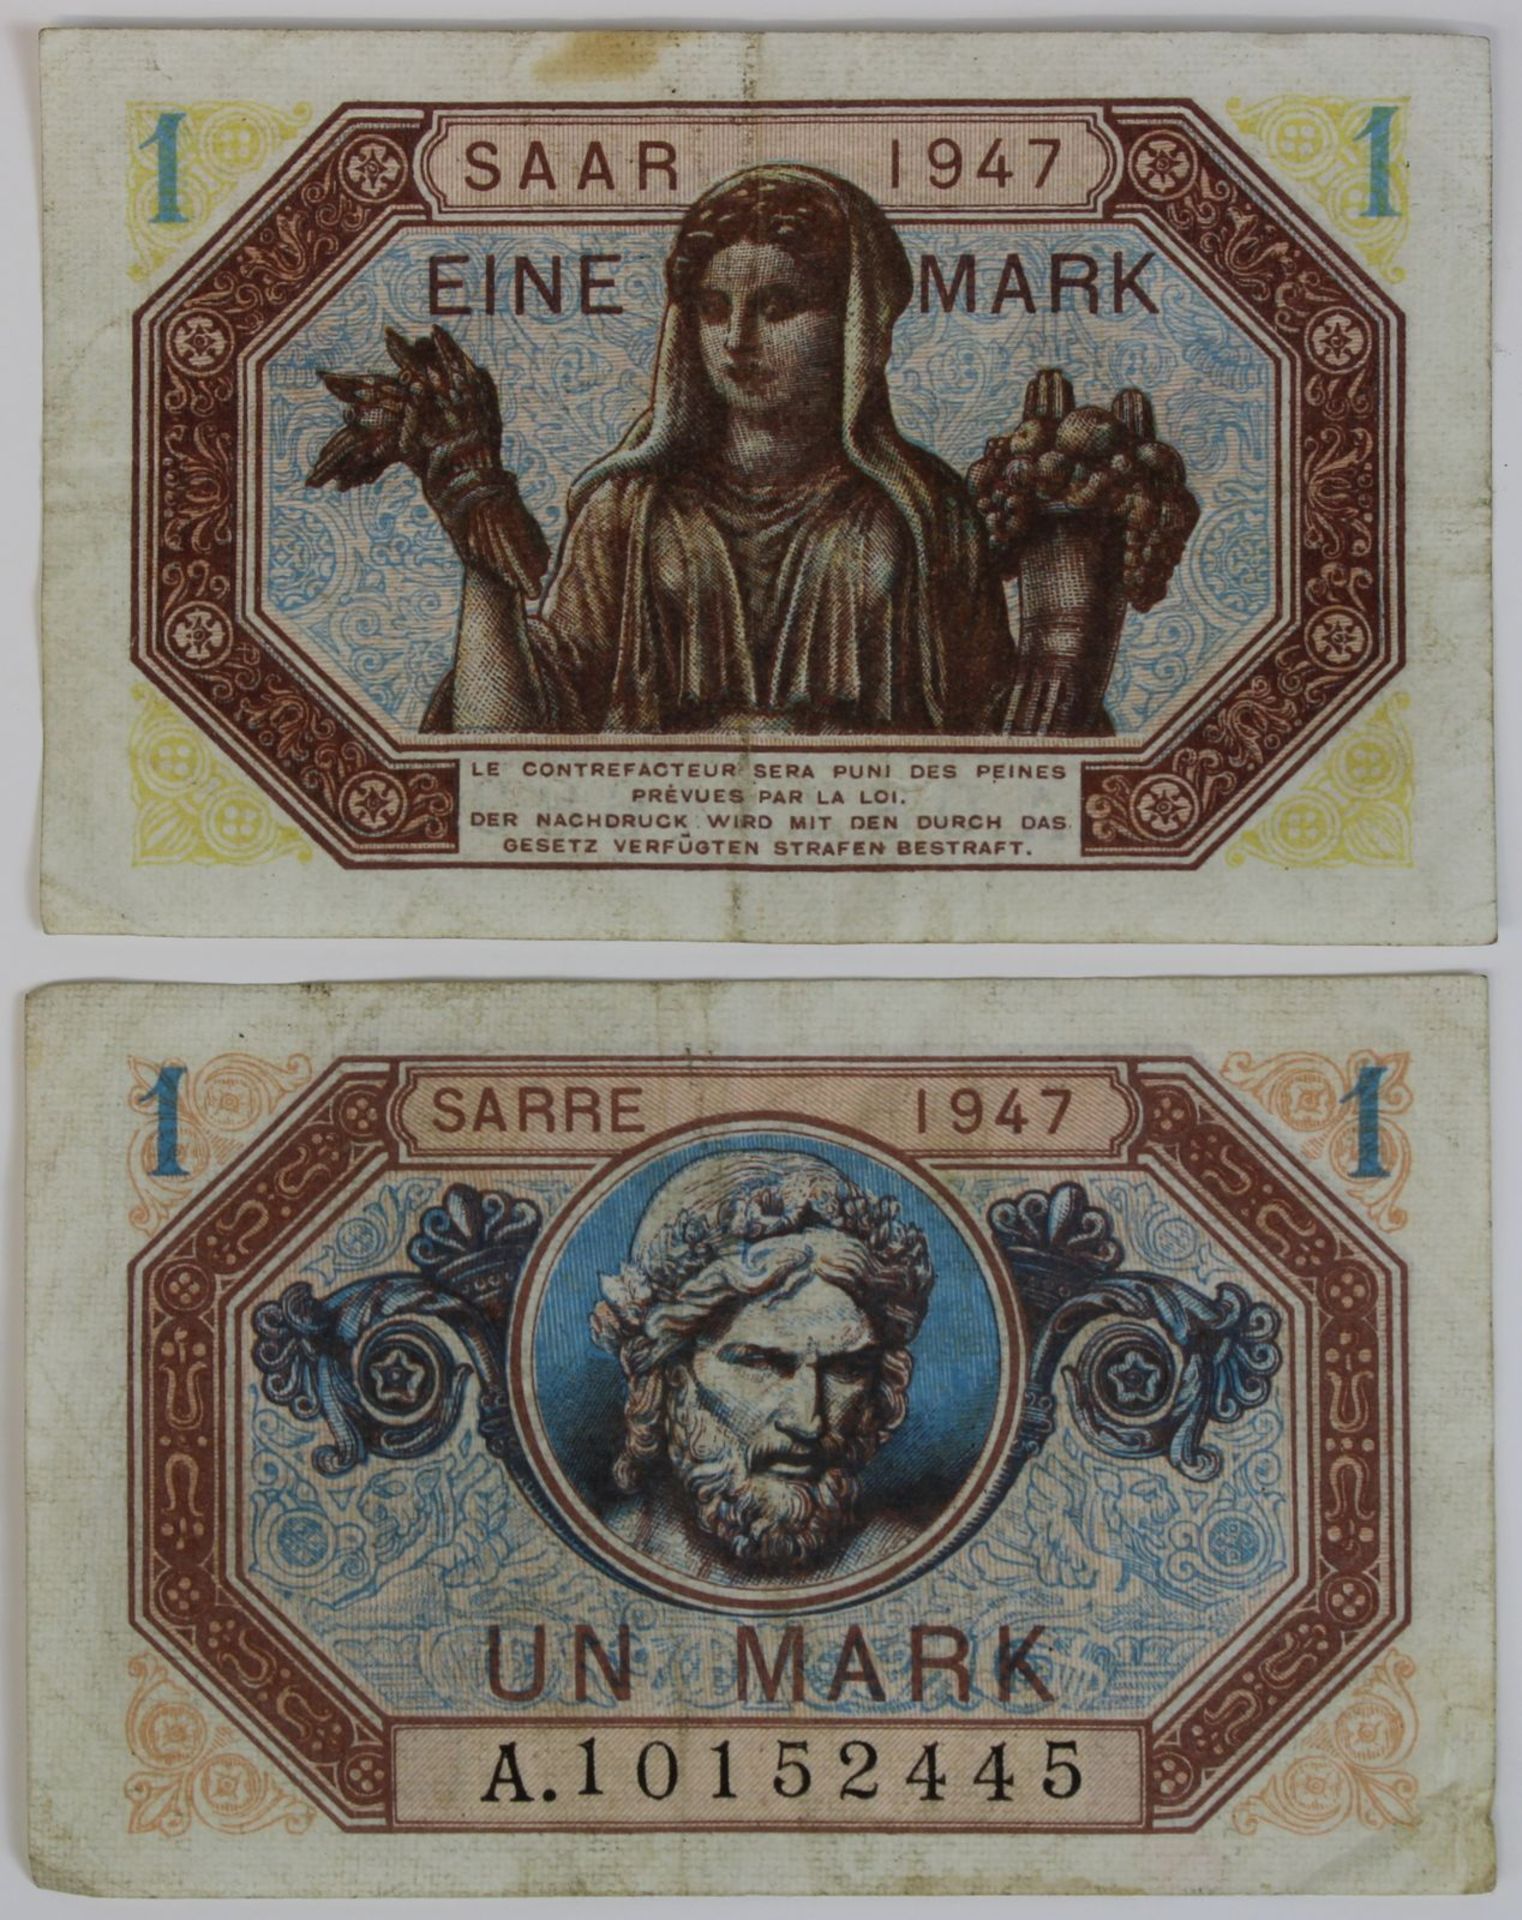 Zwei Banknoten zu einer Mark, Saar 1947, Vorderseite mit französischer Beschriftung, Rückseite mit